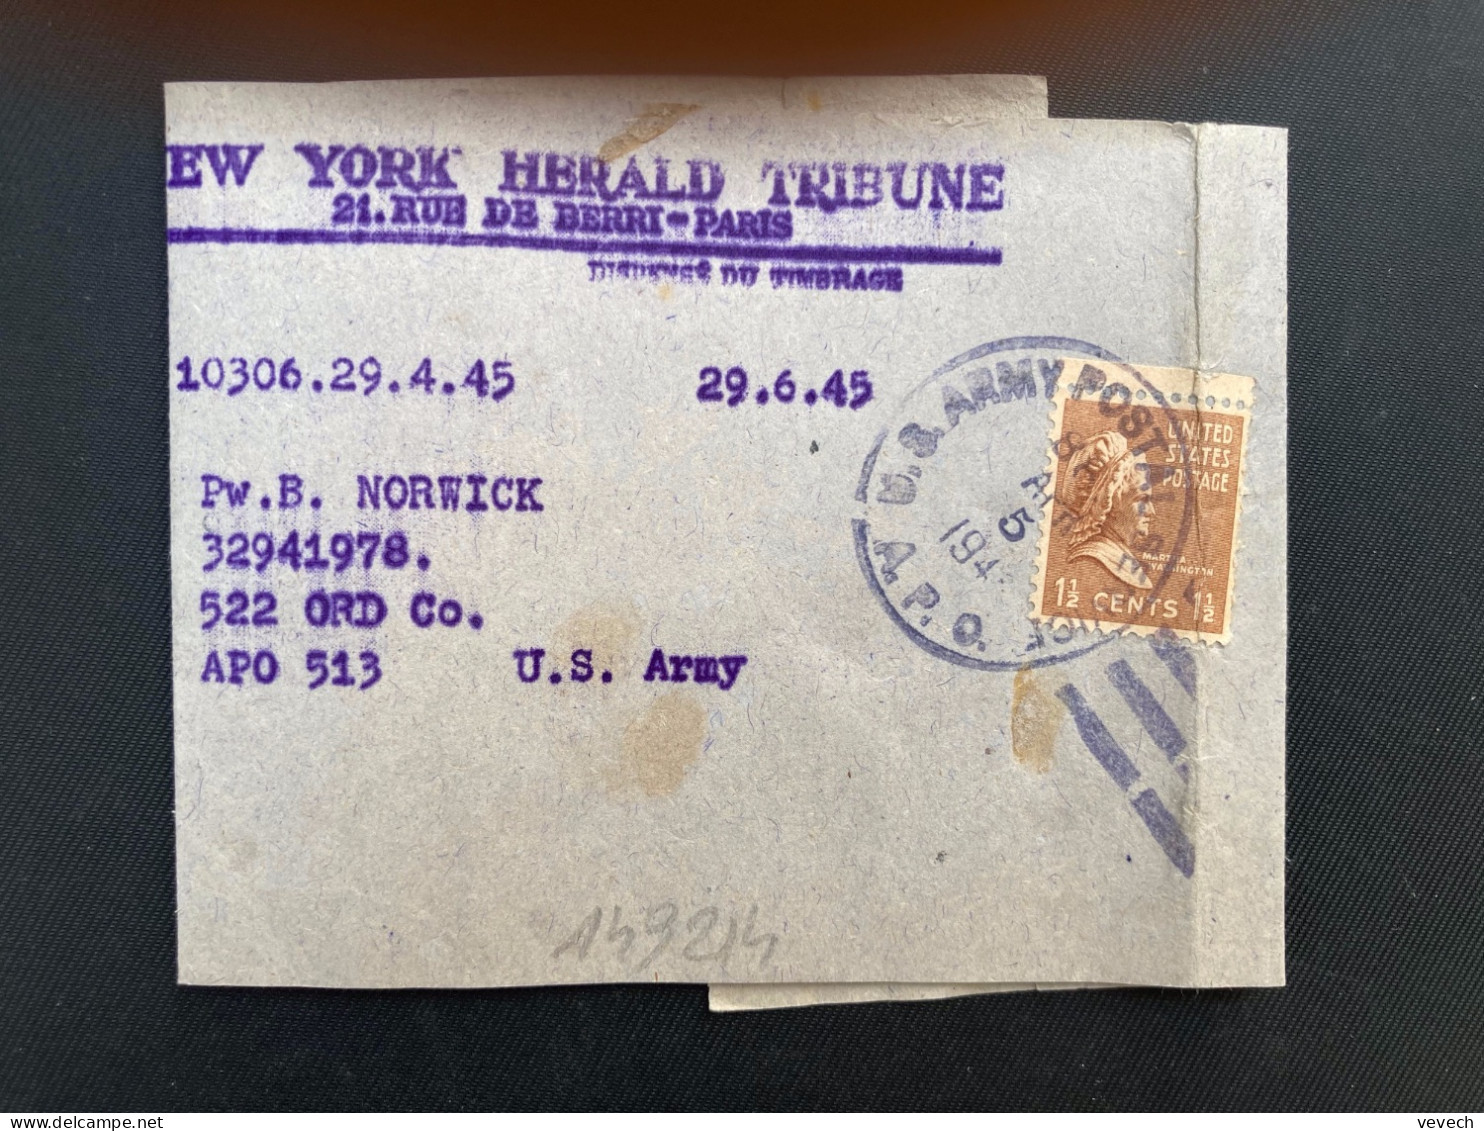 BJ NEW YORK HERALD TRIBUNE Pour APO 513 TP WASHINGTON 1 1/2c OBL.MEC.APR 5 1945 APO - Postal History